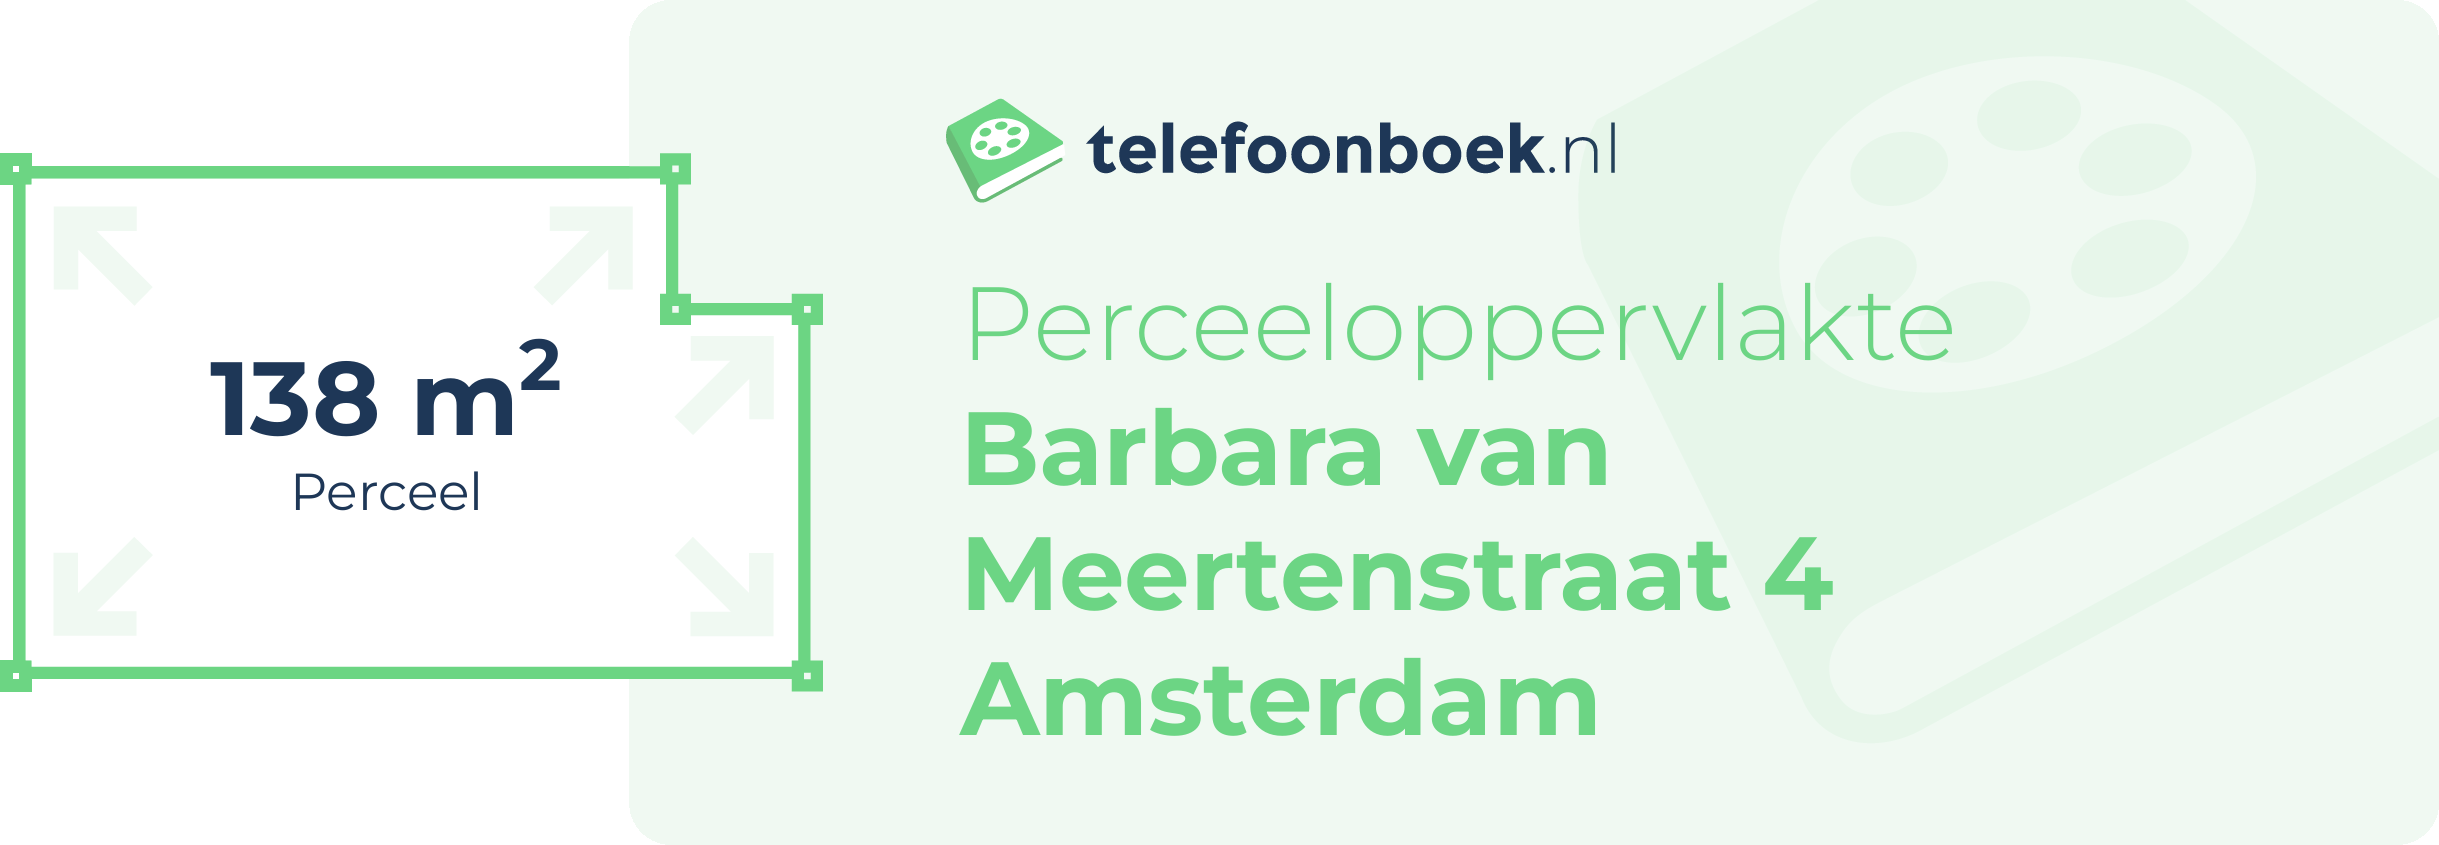 Perceeloppervlakte Barbara Van Meertenstraat 4 Amsterdam